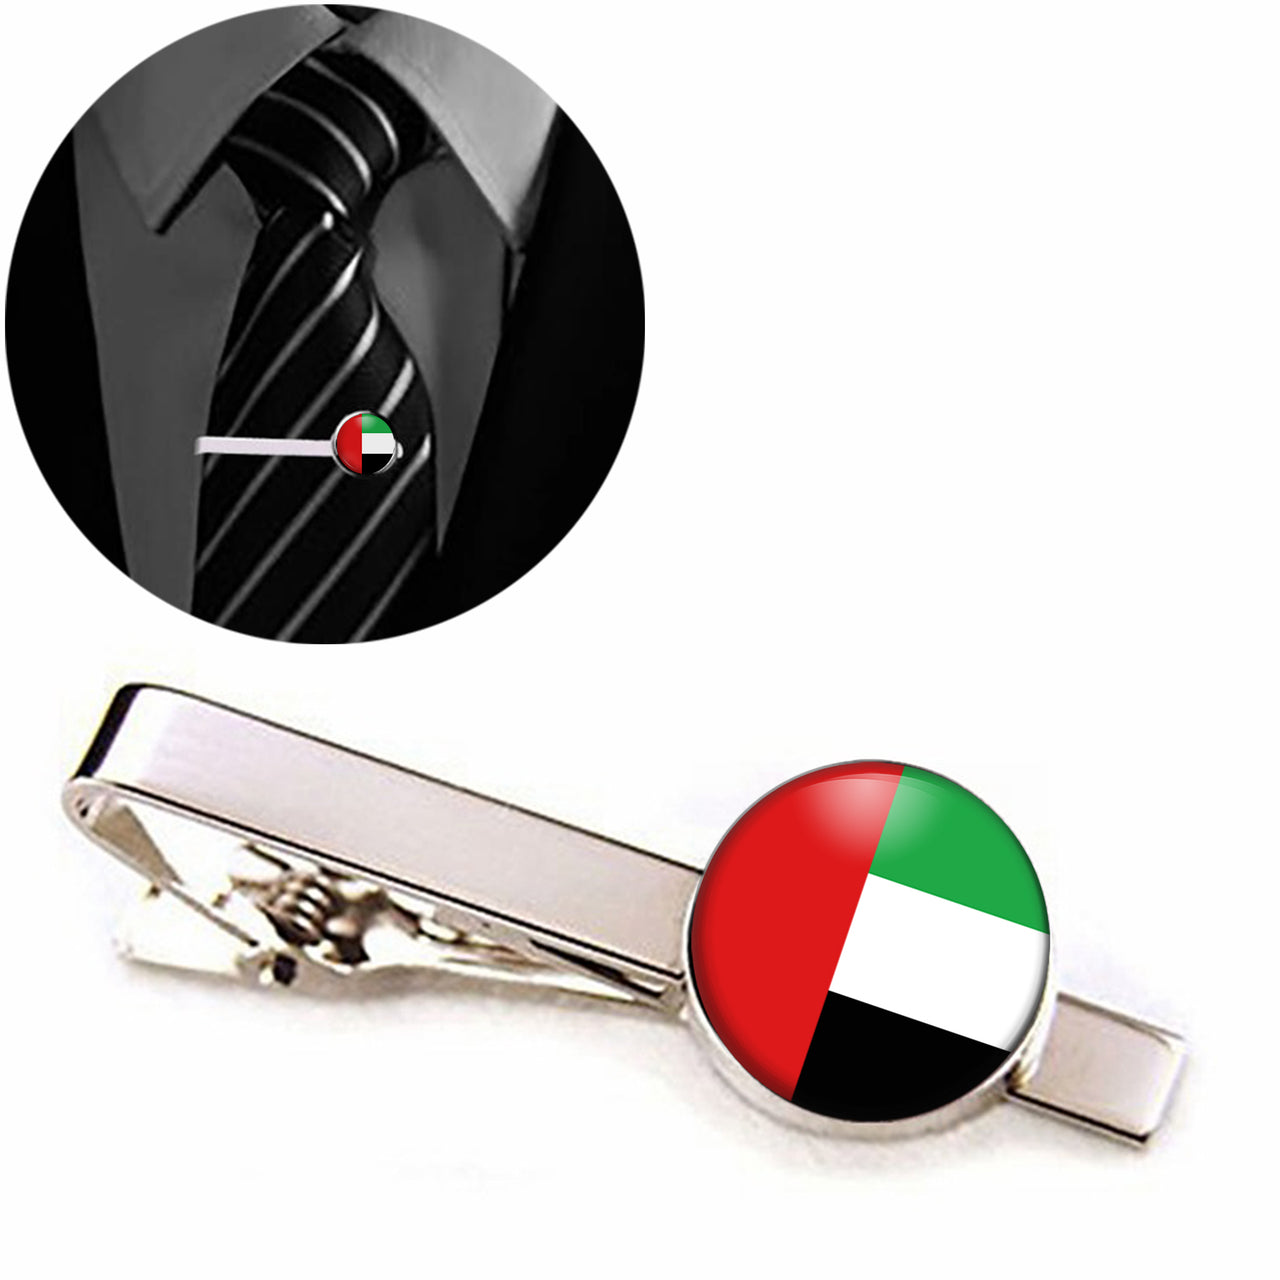 UAE Flag Designed Tie Clips